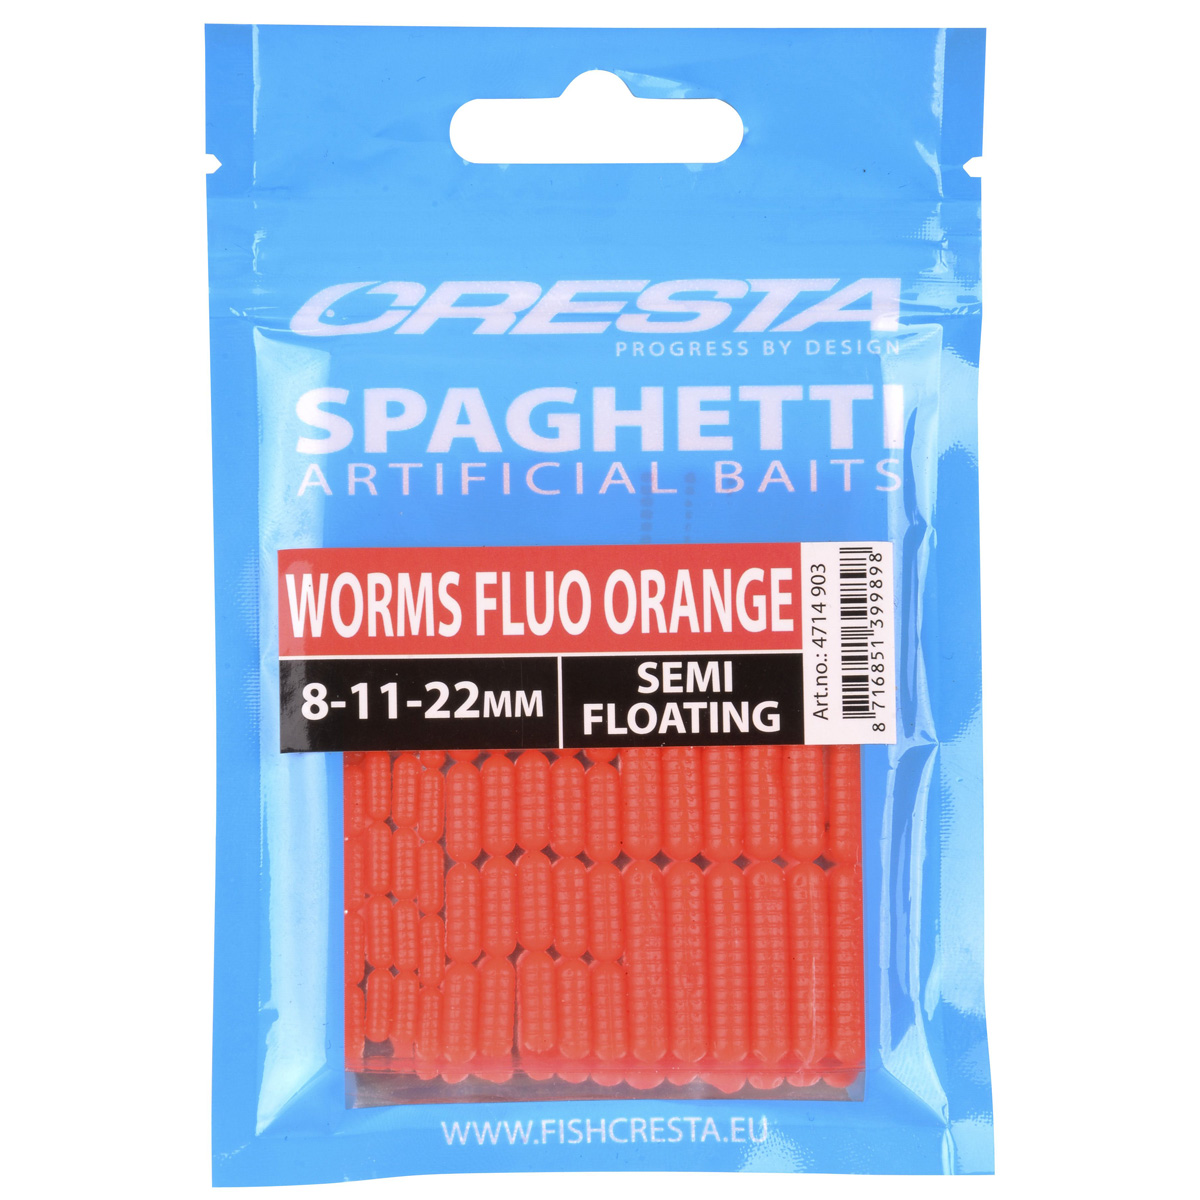 Cresta Spaghetti Worms - Fluo Orange